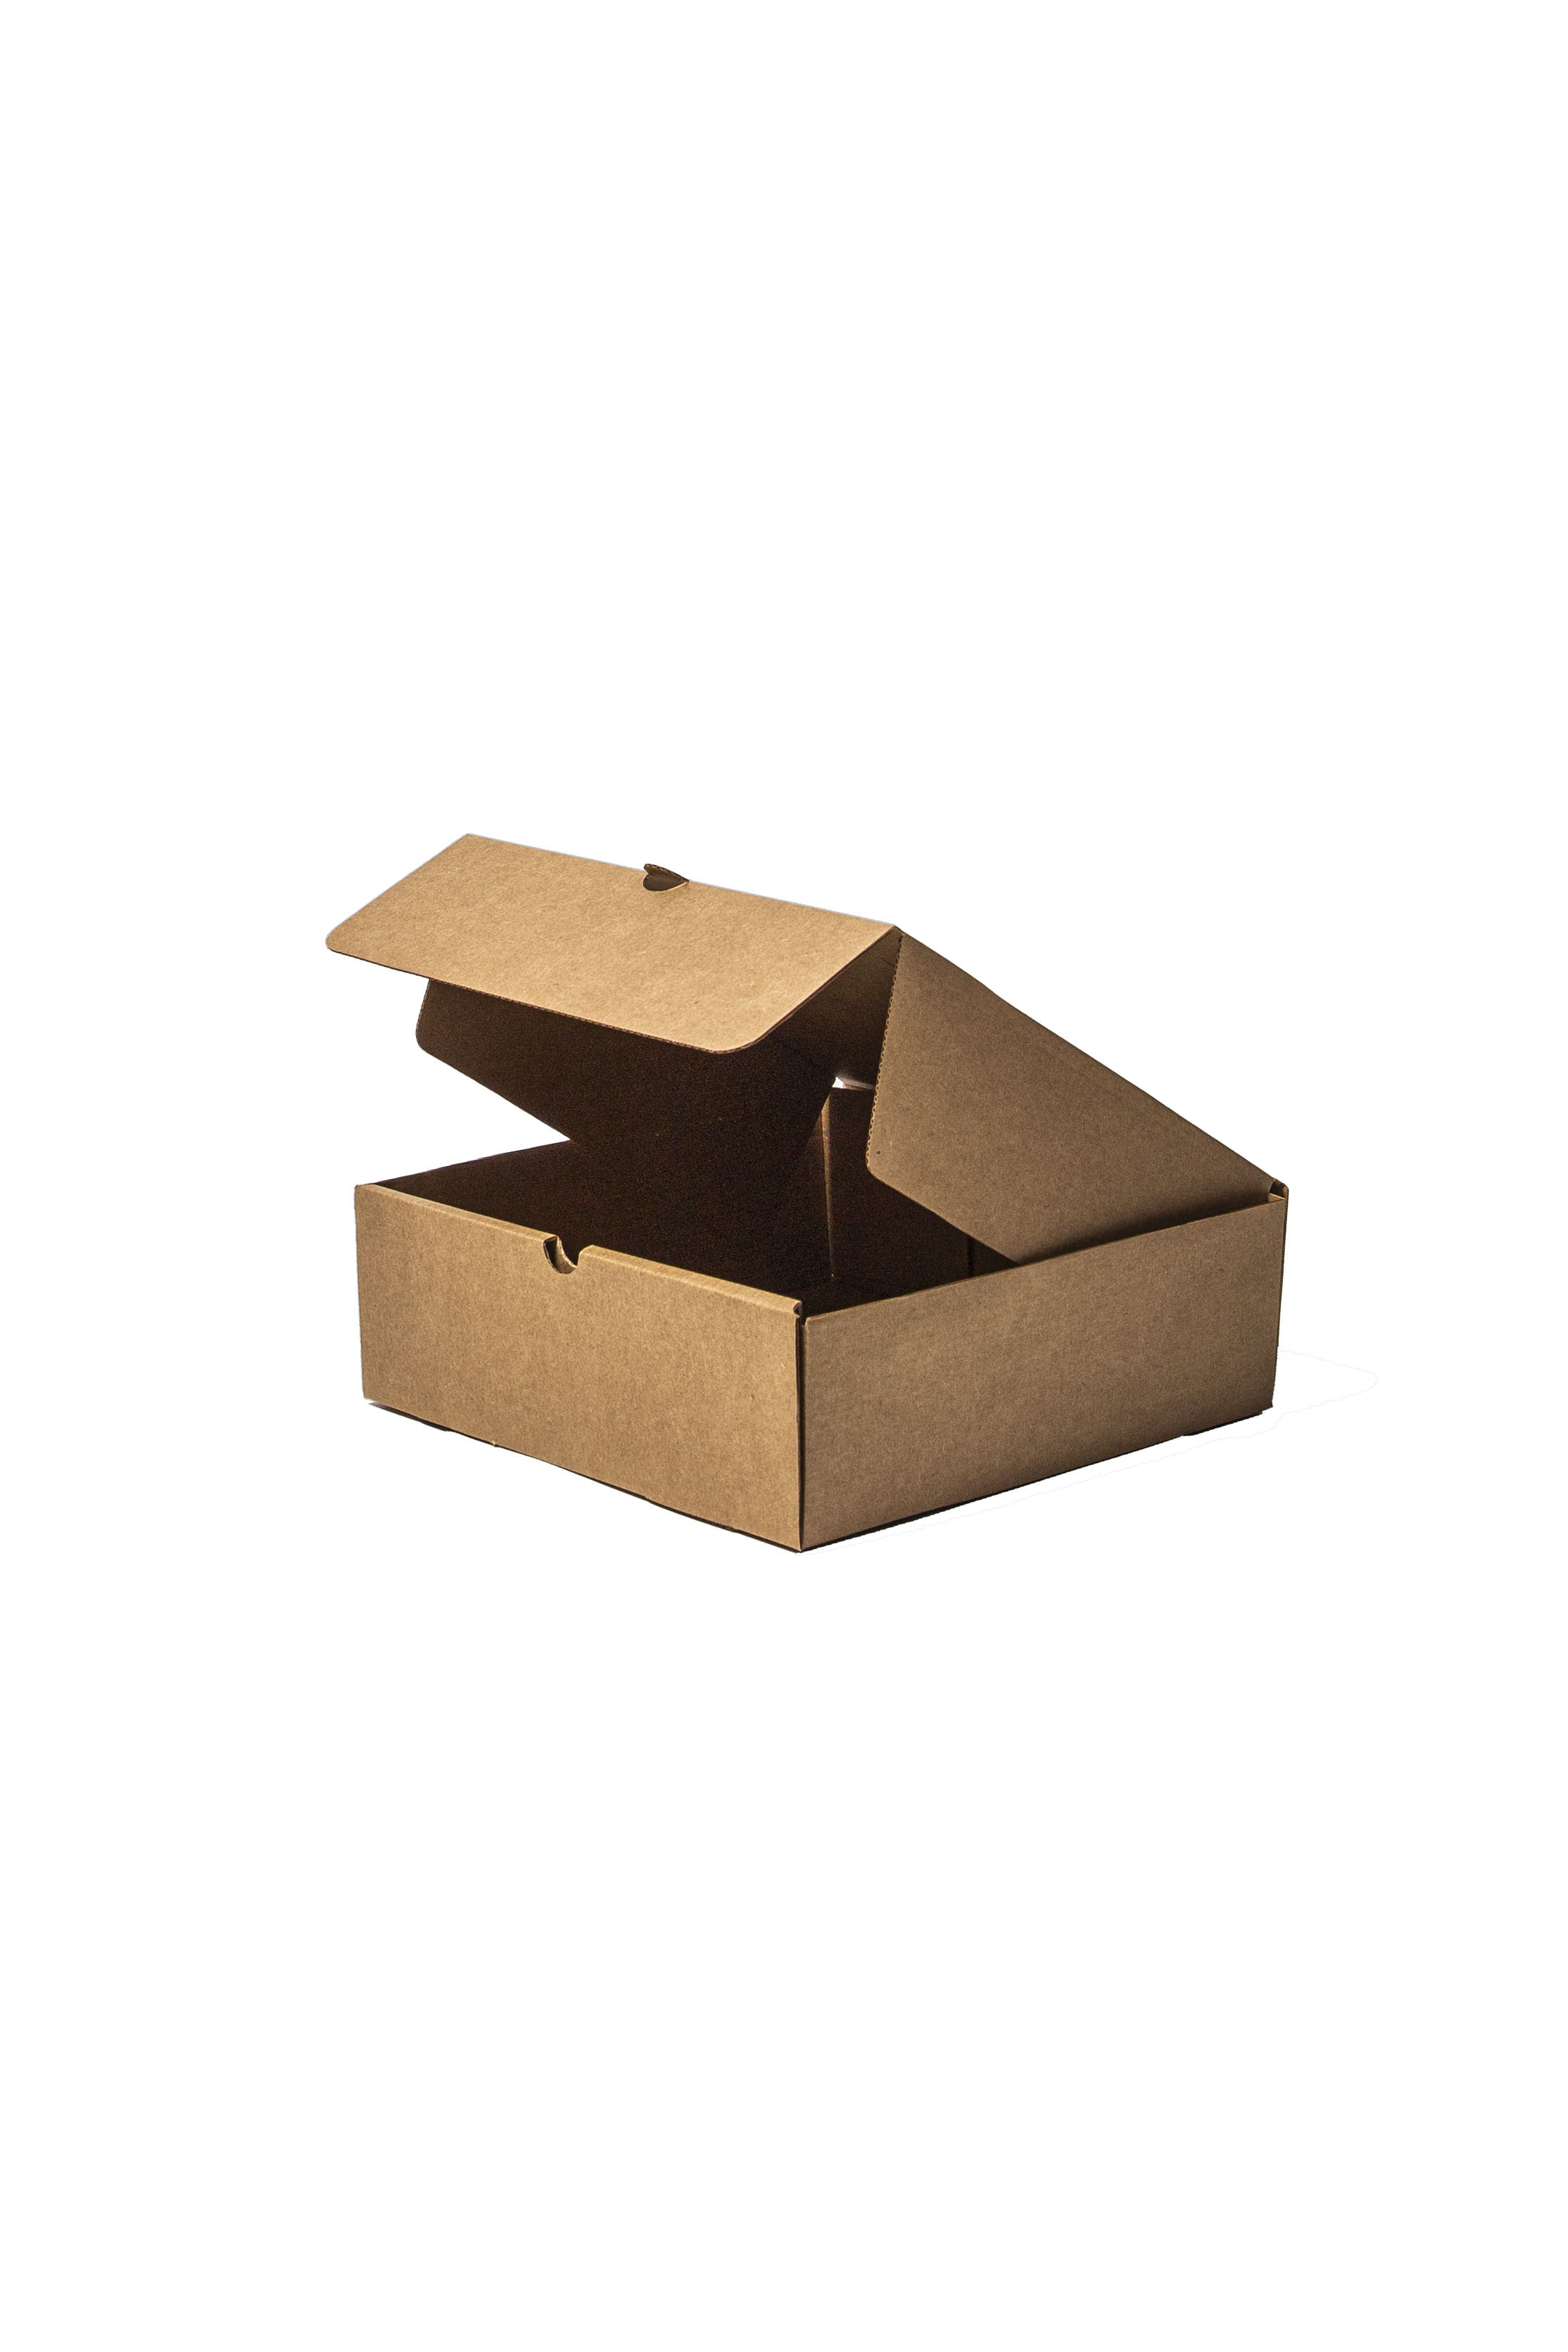 Cajas para deliverys, mudanzas, - Yaguarete Cartones